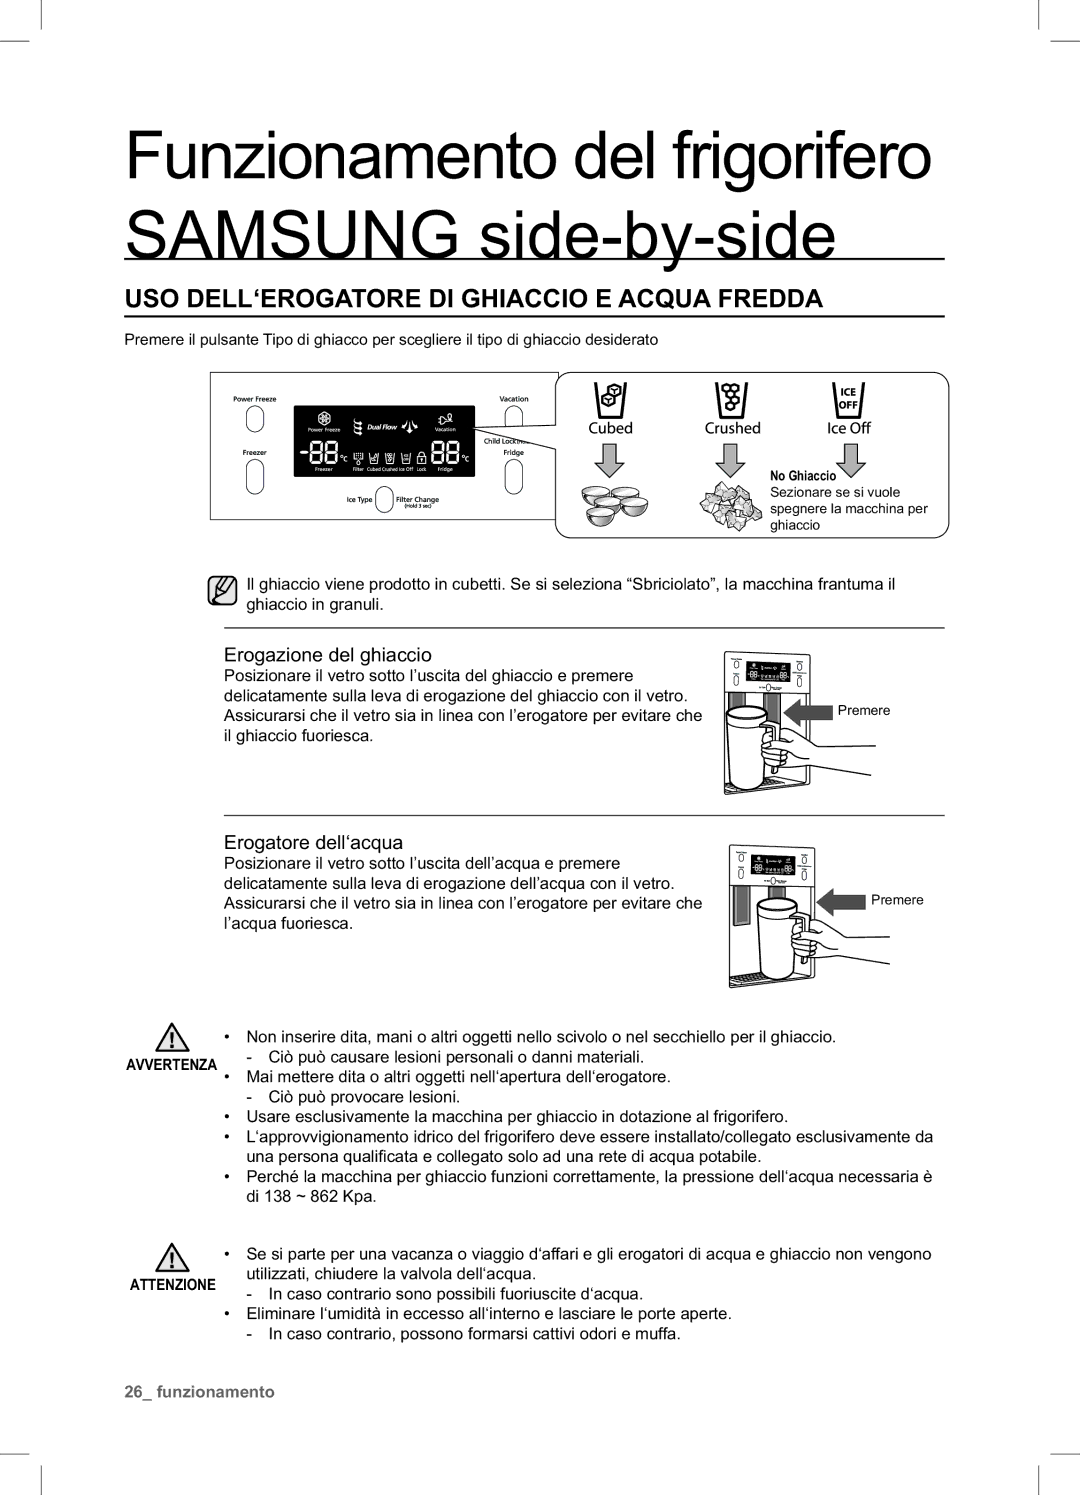 Samsung RSA1STTS1/XES manual USO DELL‘EROGATORE DI Ghiaccio E Acqua Fredda, Erogazione del ghiaccio, Erogatore dell‘acqua 